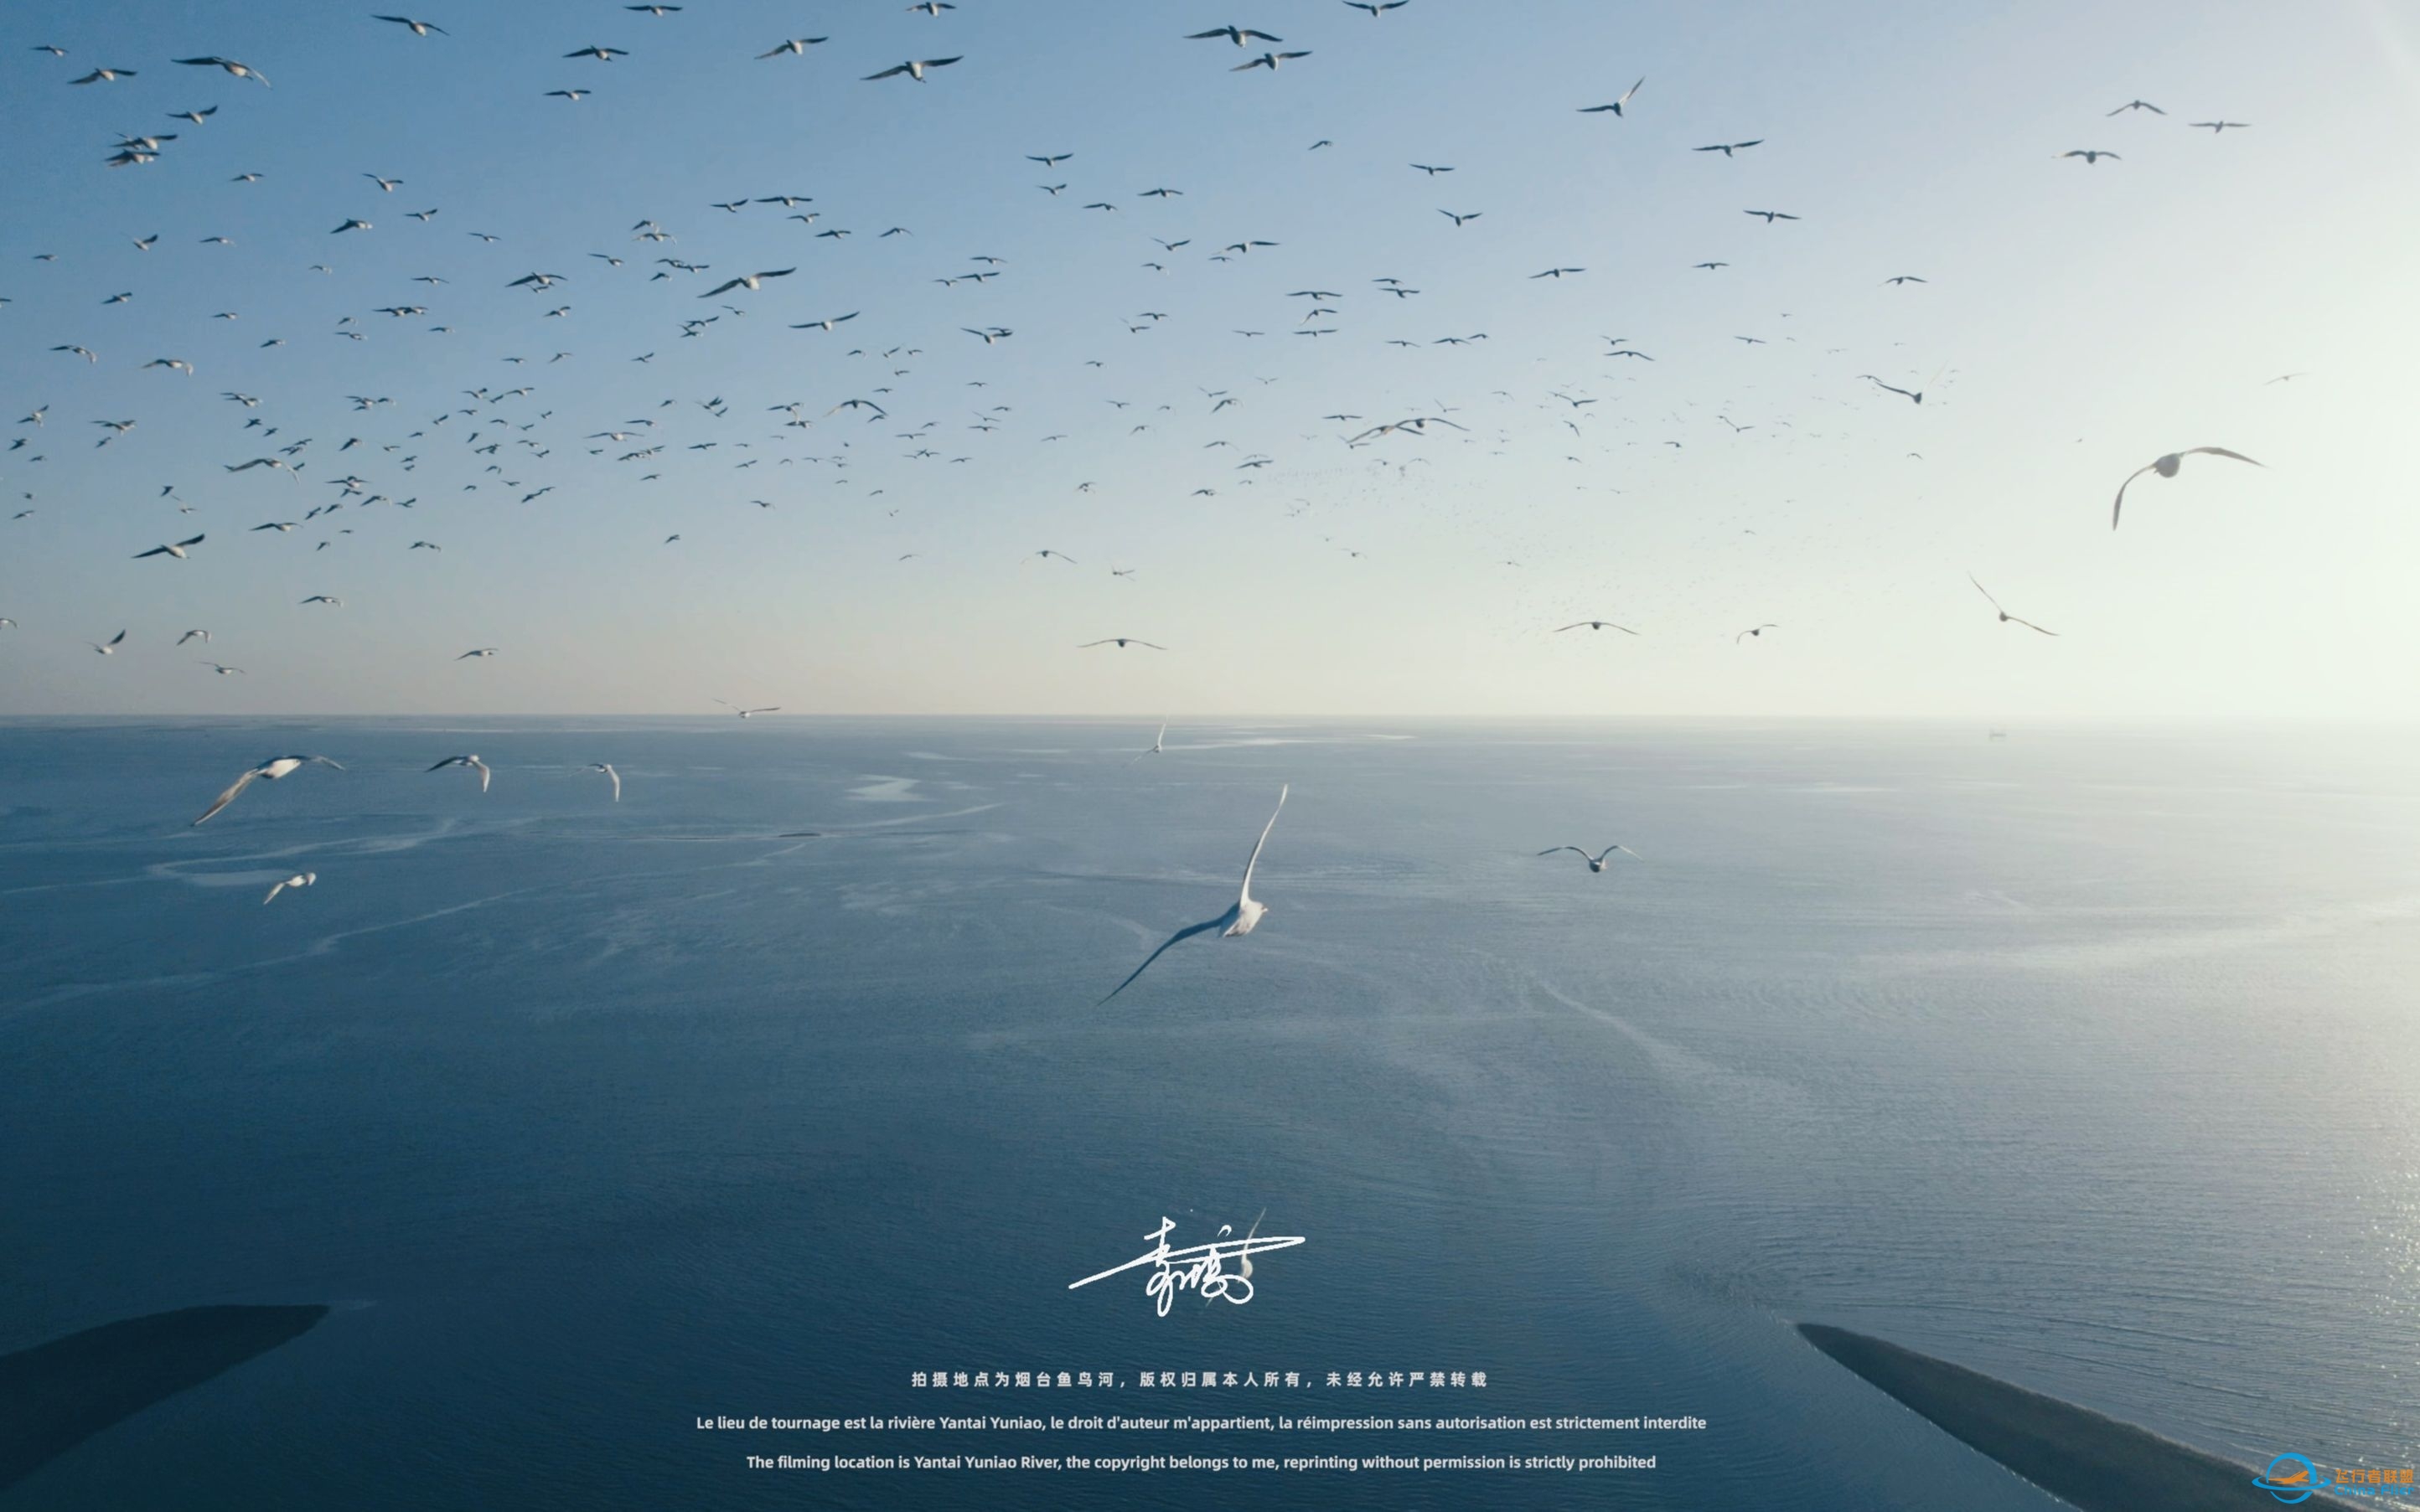 【沉浸式飞行】[DJI AIR 2S]一次跟海鸥一起的沉浸式飞行体验~-720 